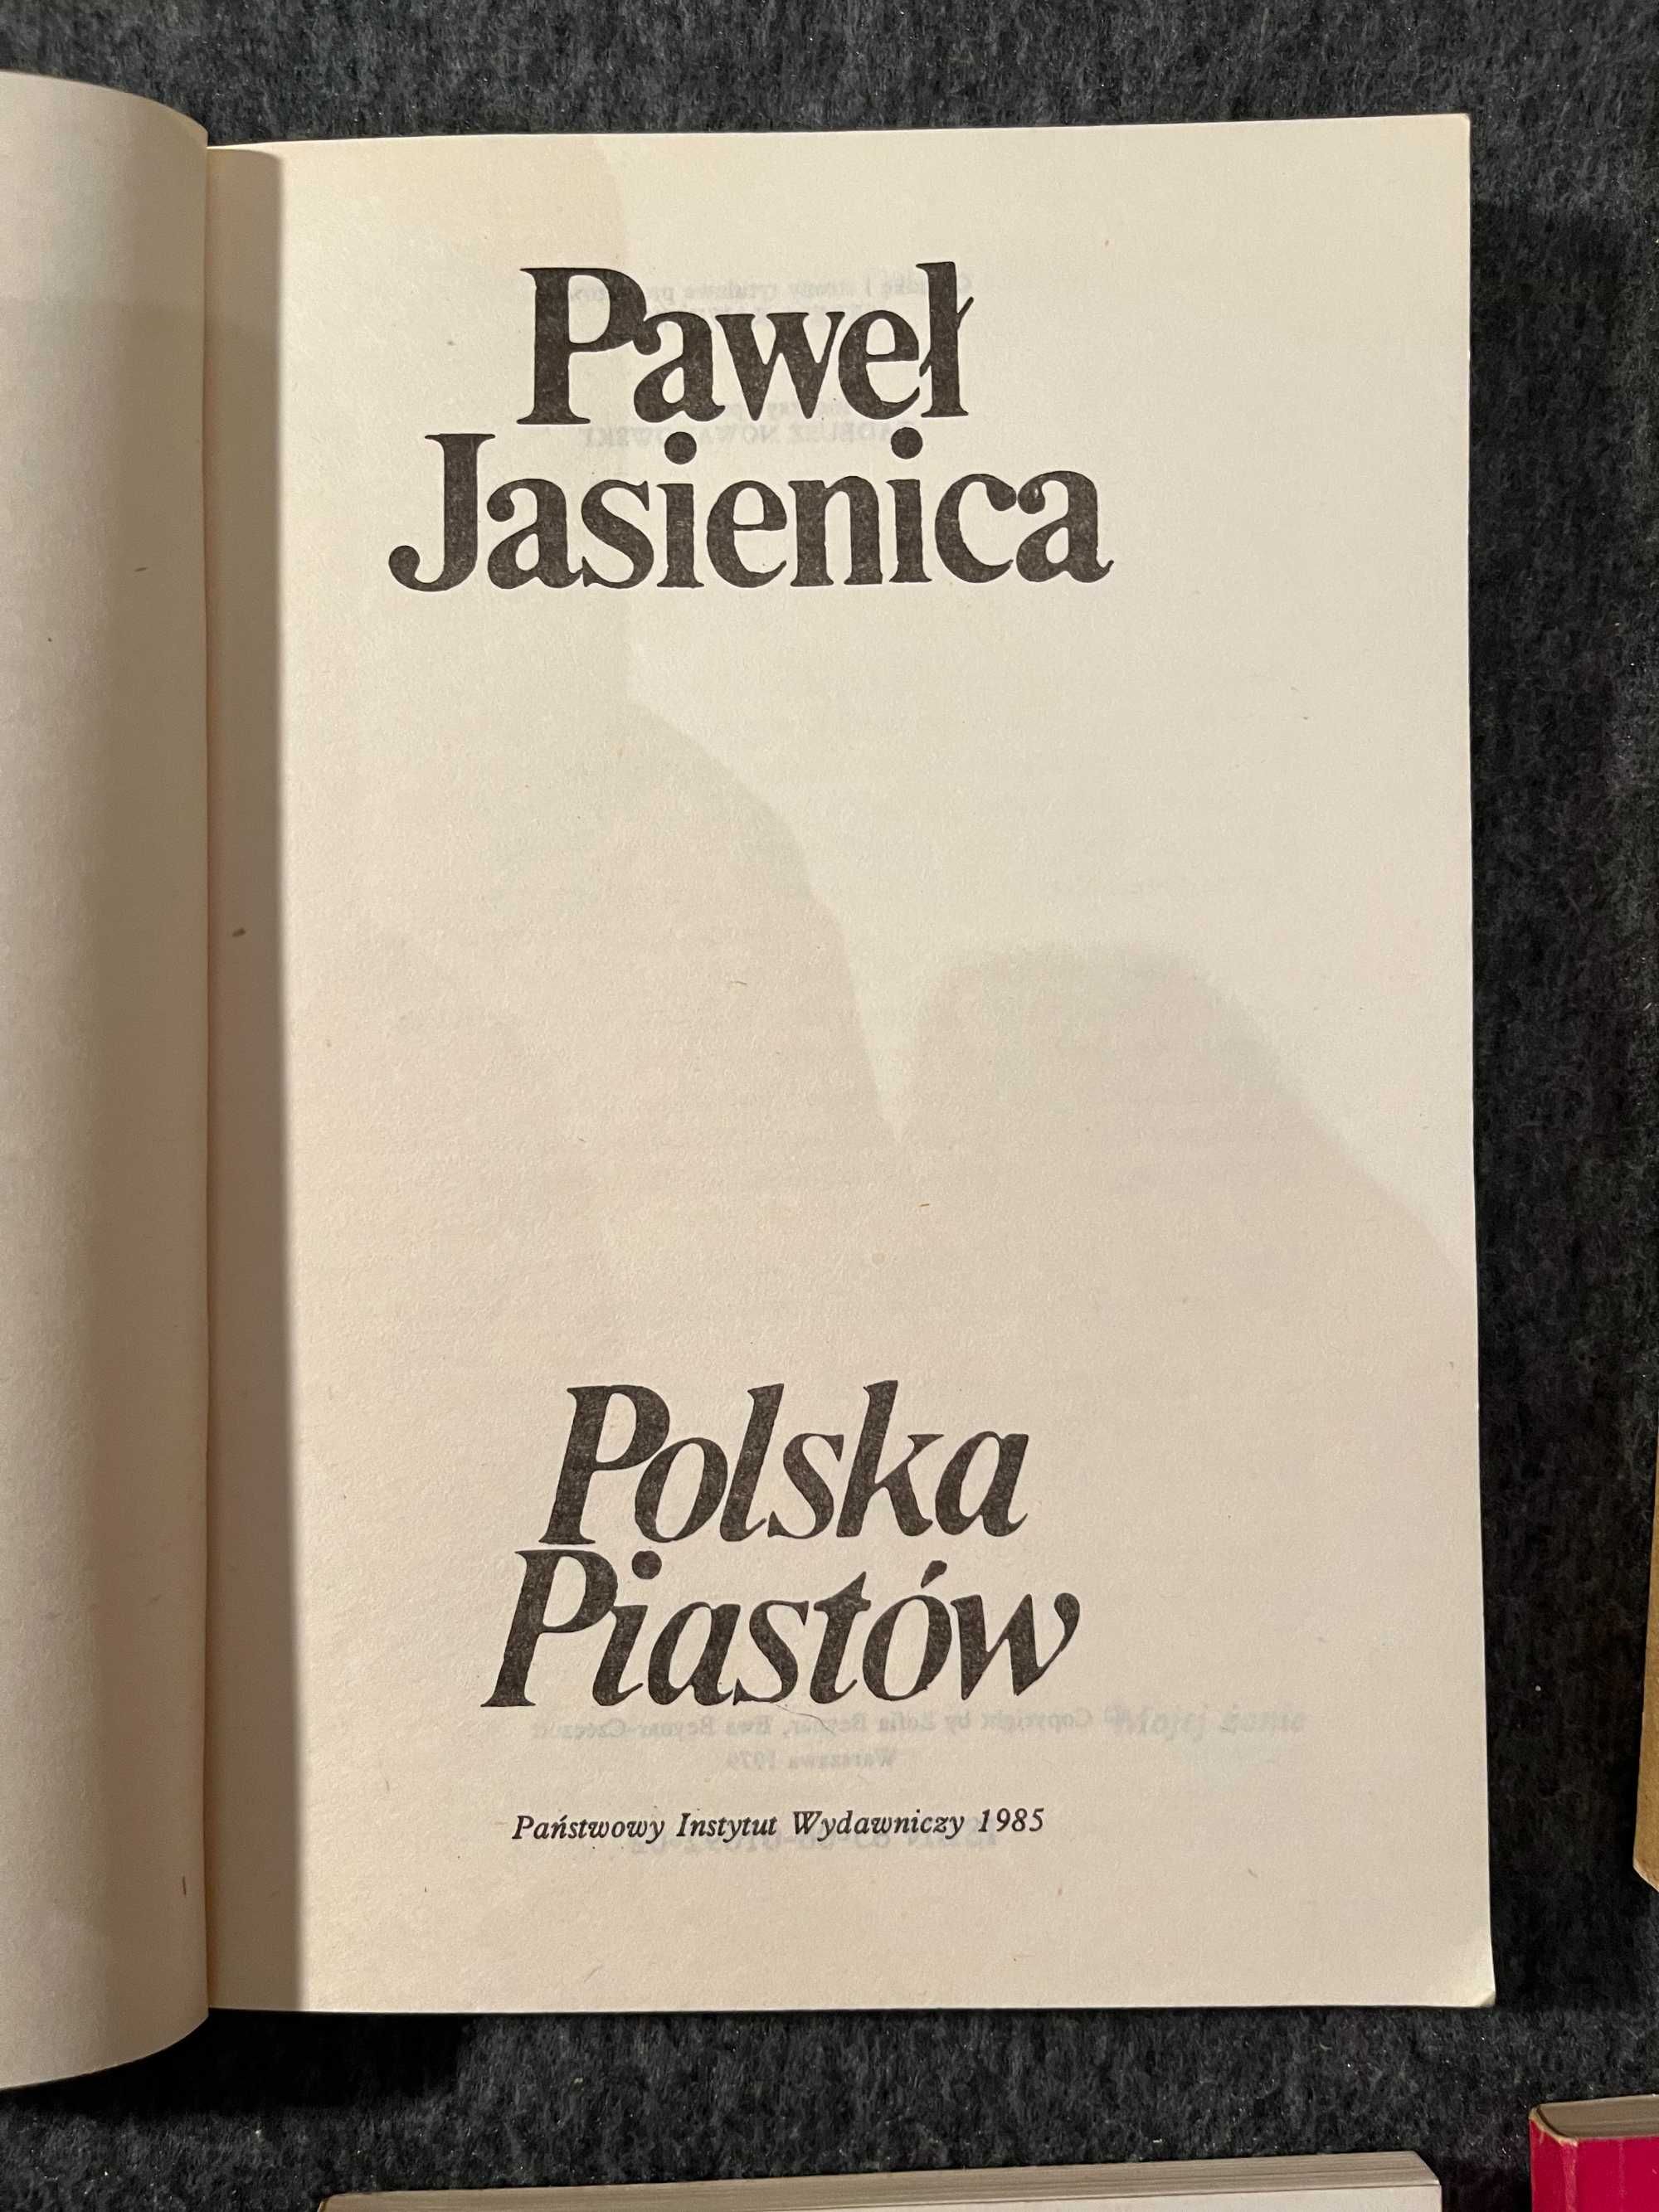 Zestaw książek P.Jasienicy m.in. Polska Piastów, Polska anarchia